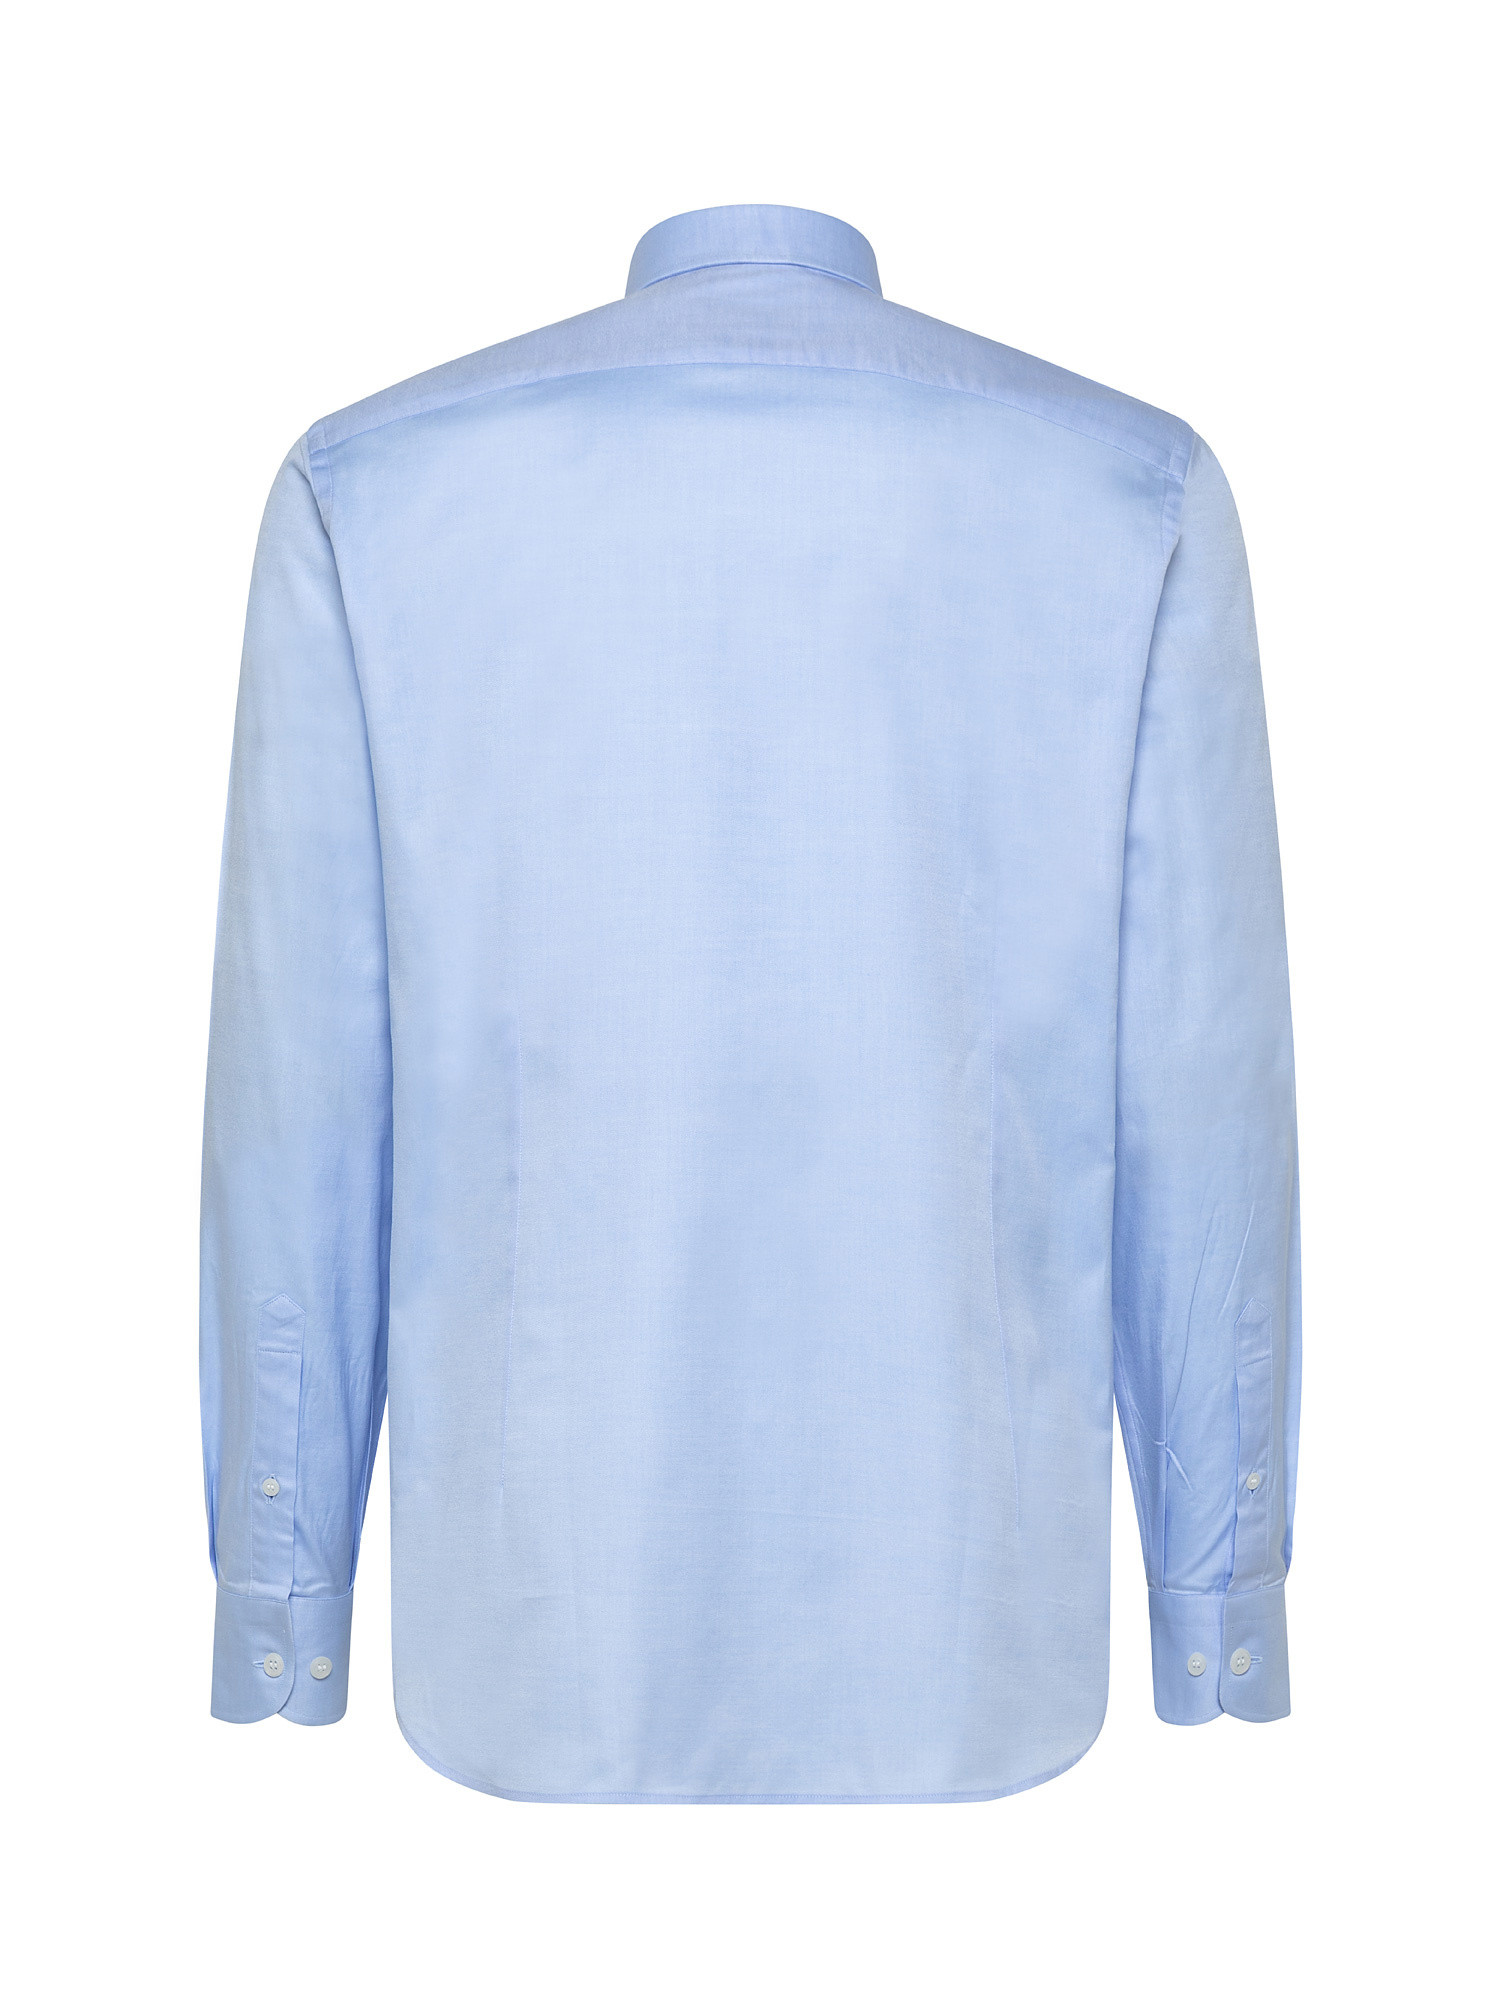 Camicia slim fit in twill di cotone, Azzurro, large image number 1